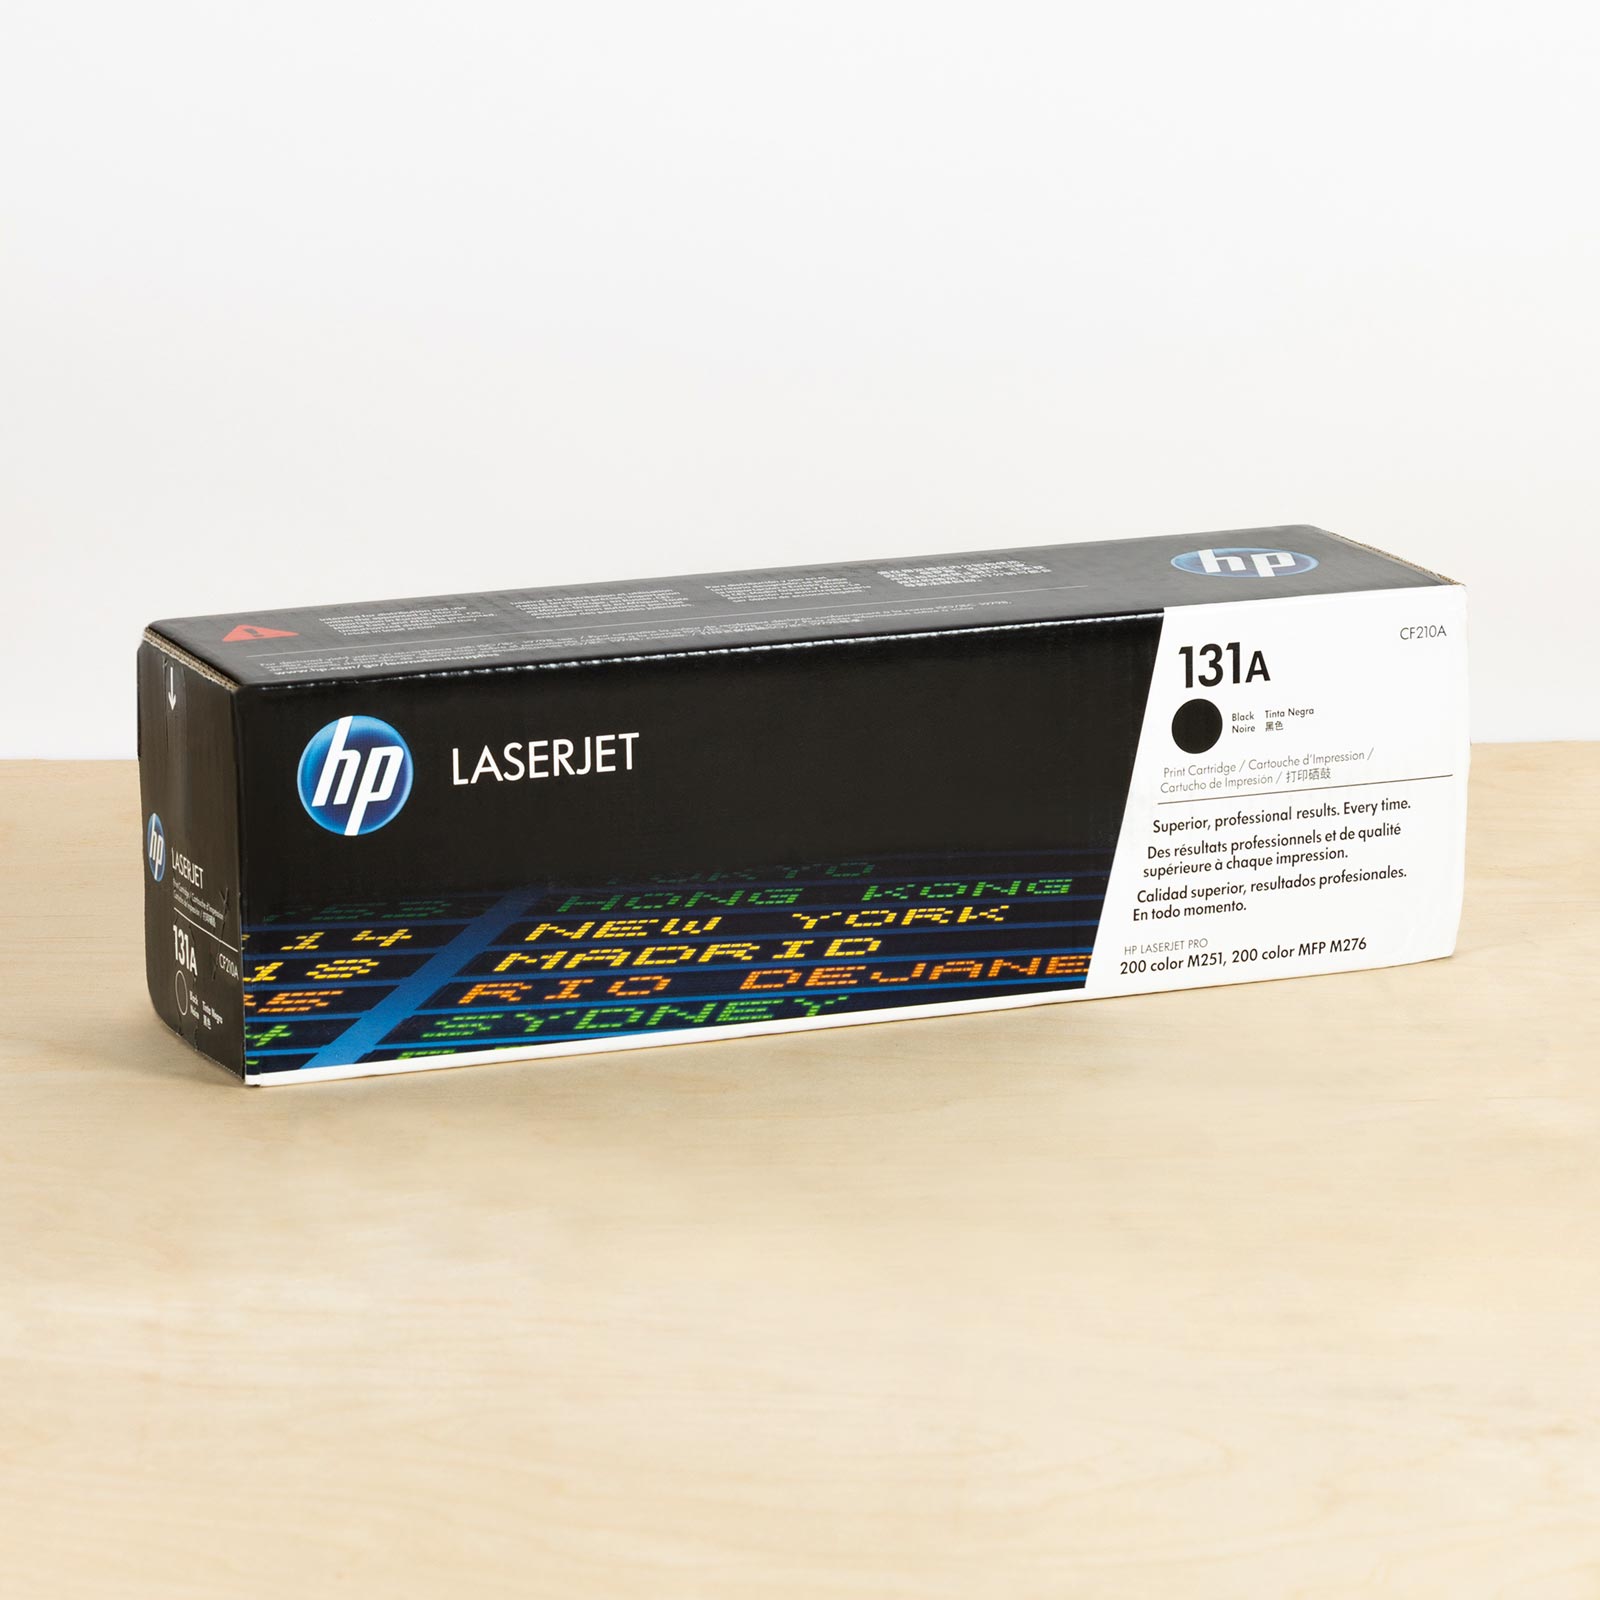 Hp Black-Toner-Cartridge-HP-Color-Laserjet-Pro-200-M2